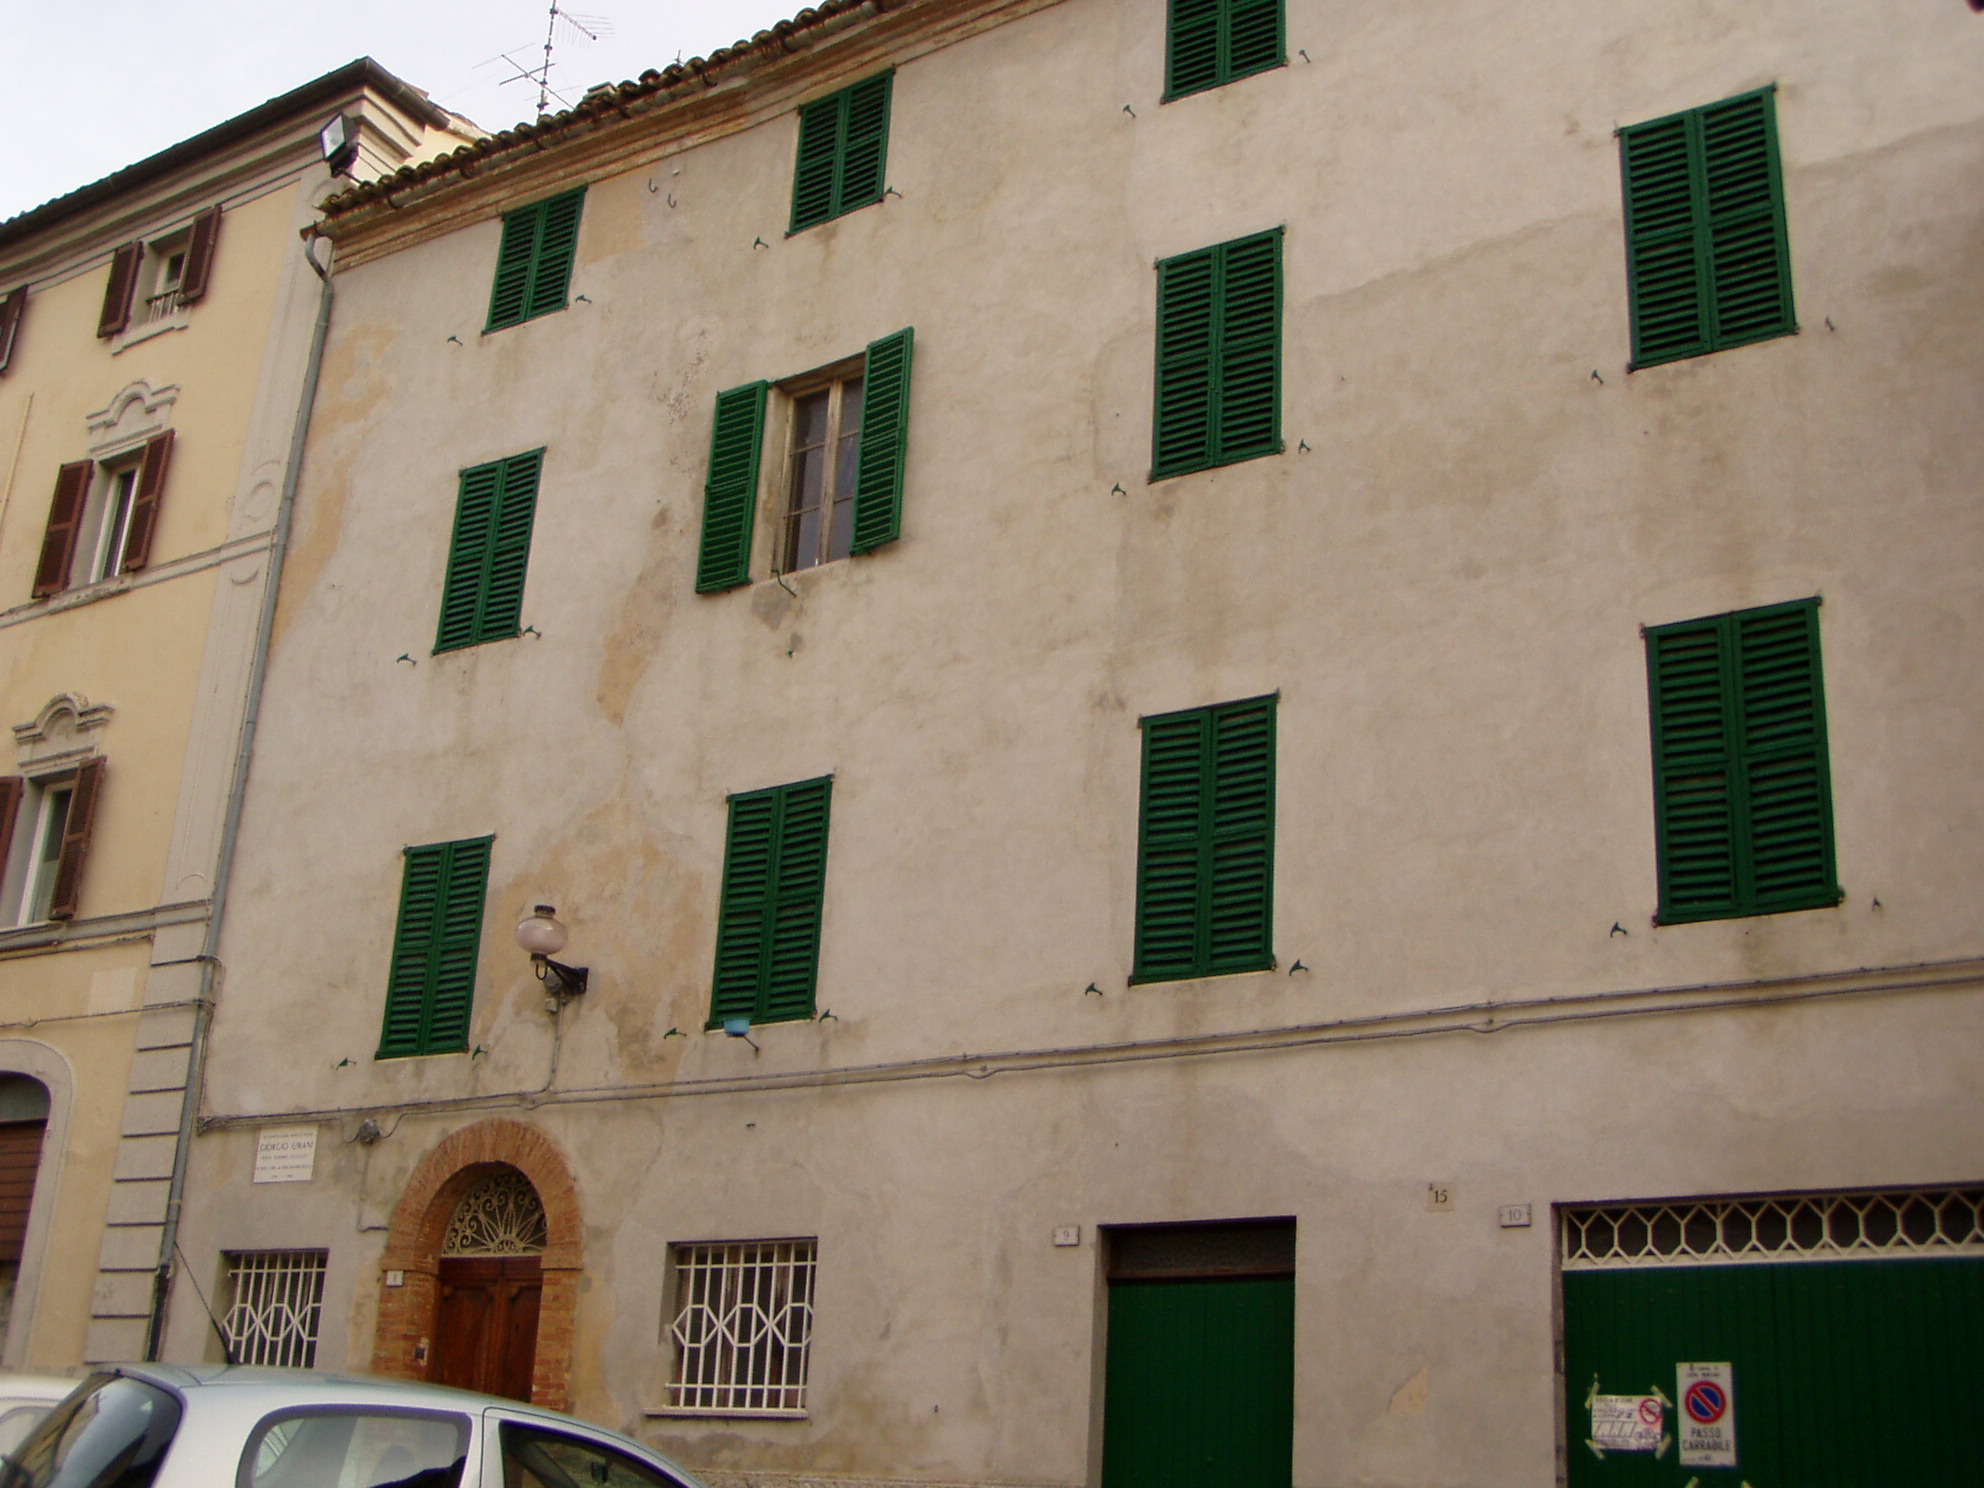 Casa natale di Giorgio Umani (casa a schiera) - Cupramontana (AN) 